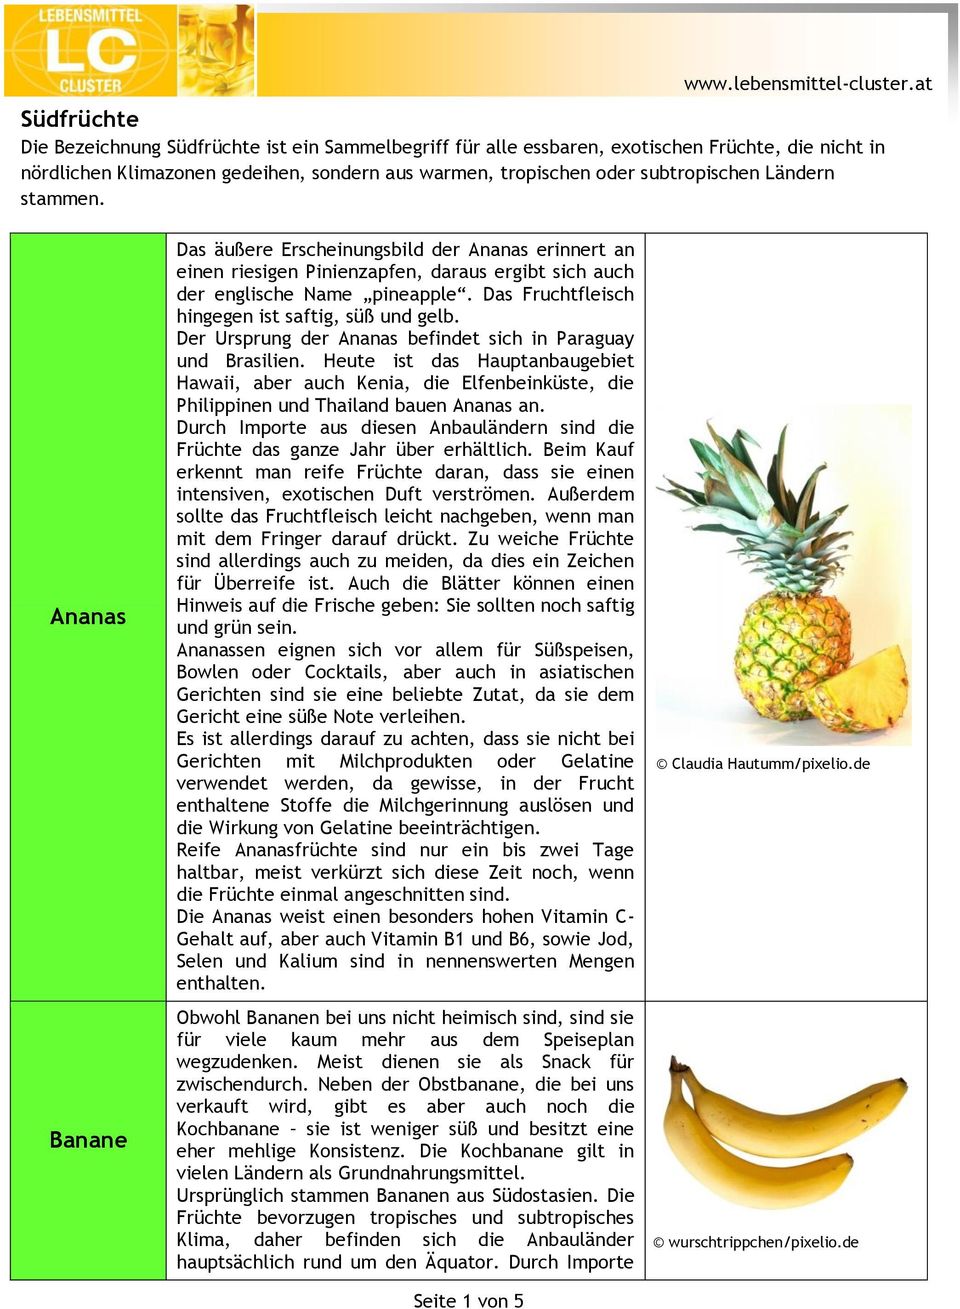 Das Fruchtfleisch hingegen ist saftig, süß und gelb. Der Ursprung der Ananas befindet sich in Paraguay und Brasilien.